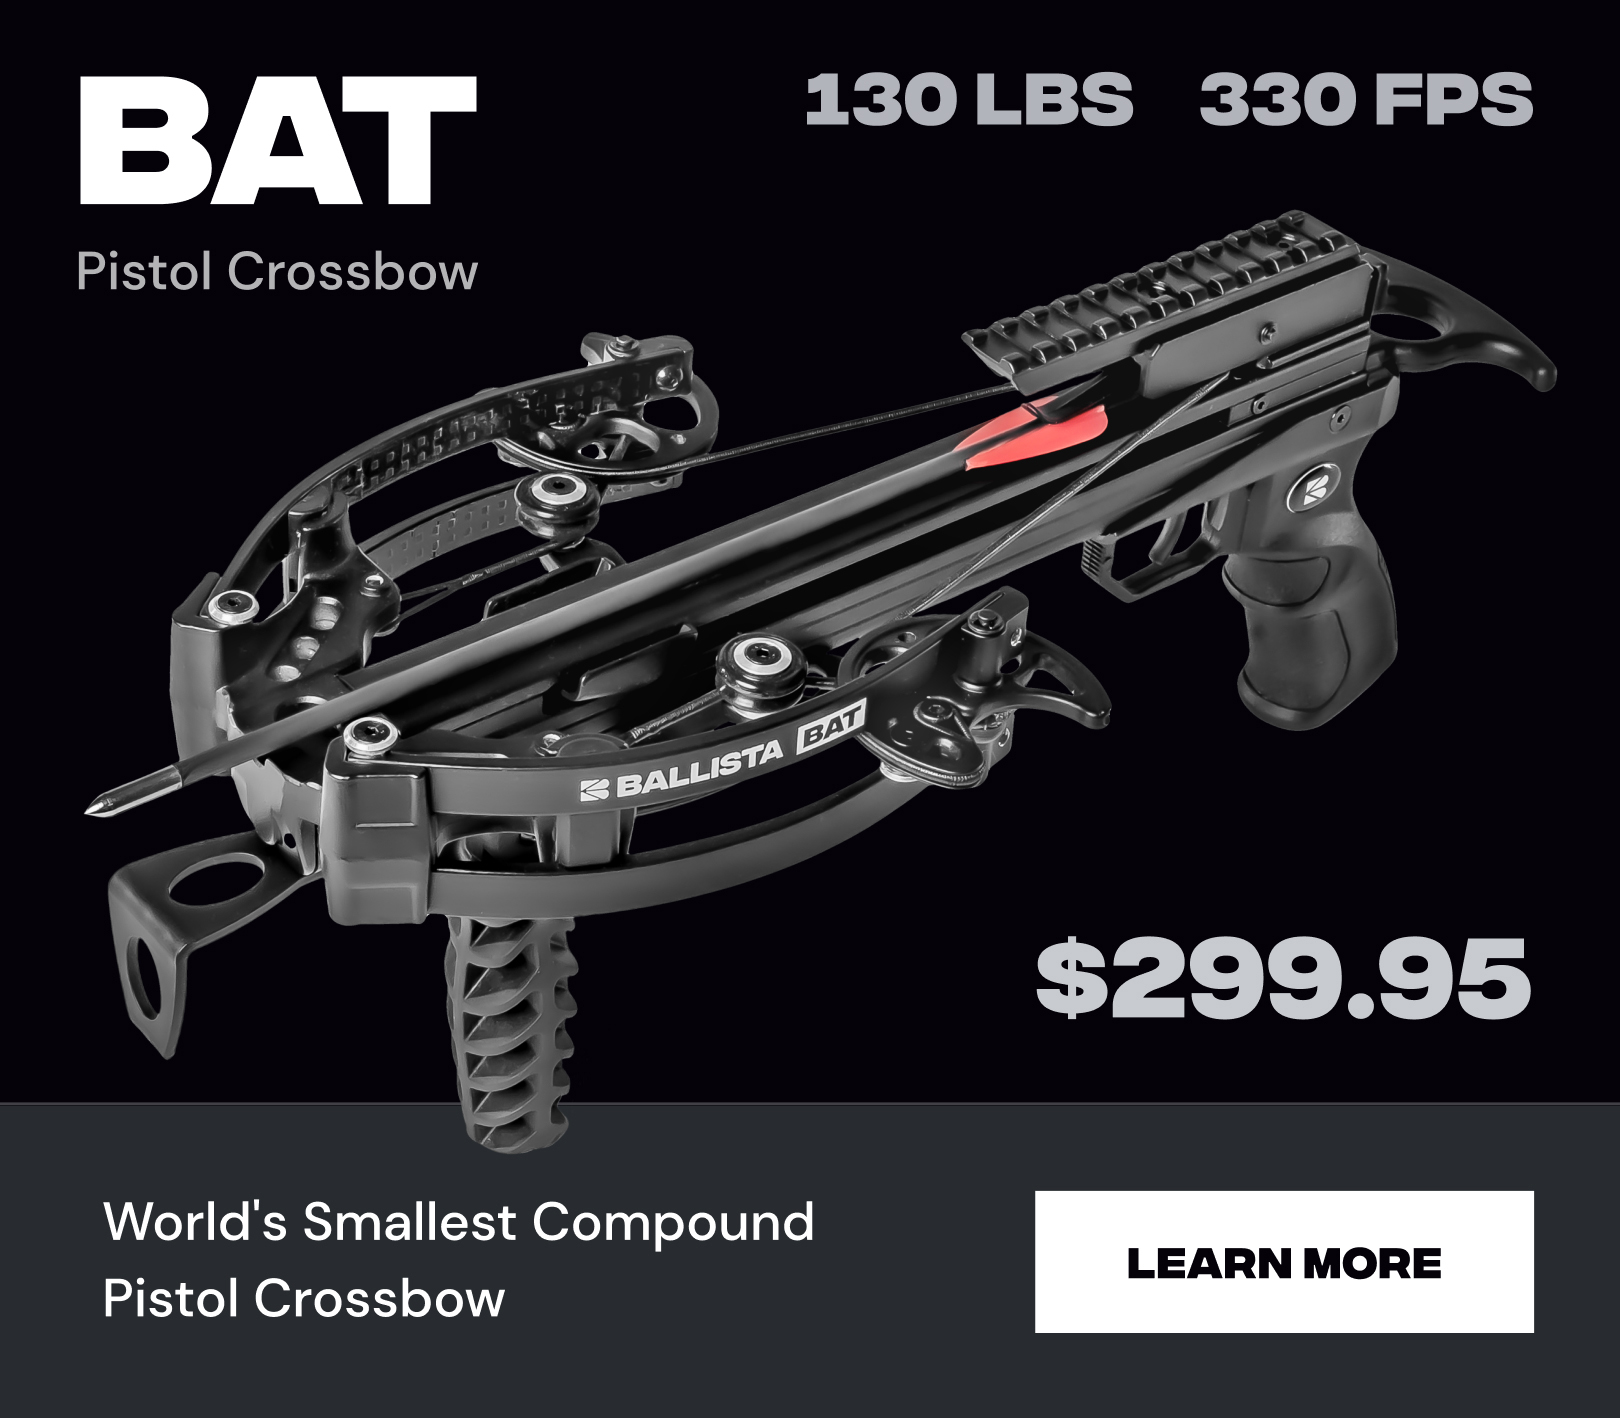 Bat Pistol Crossbow